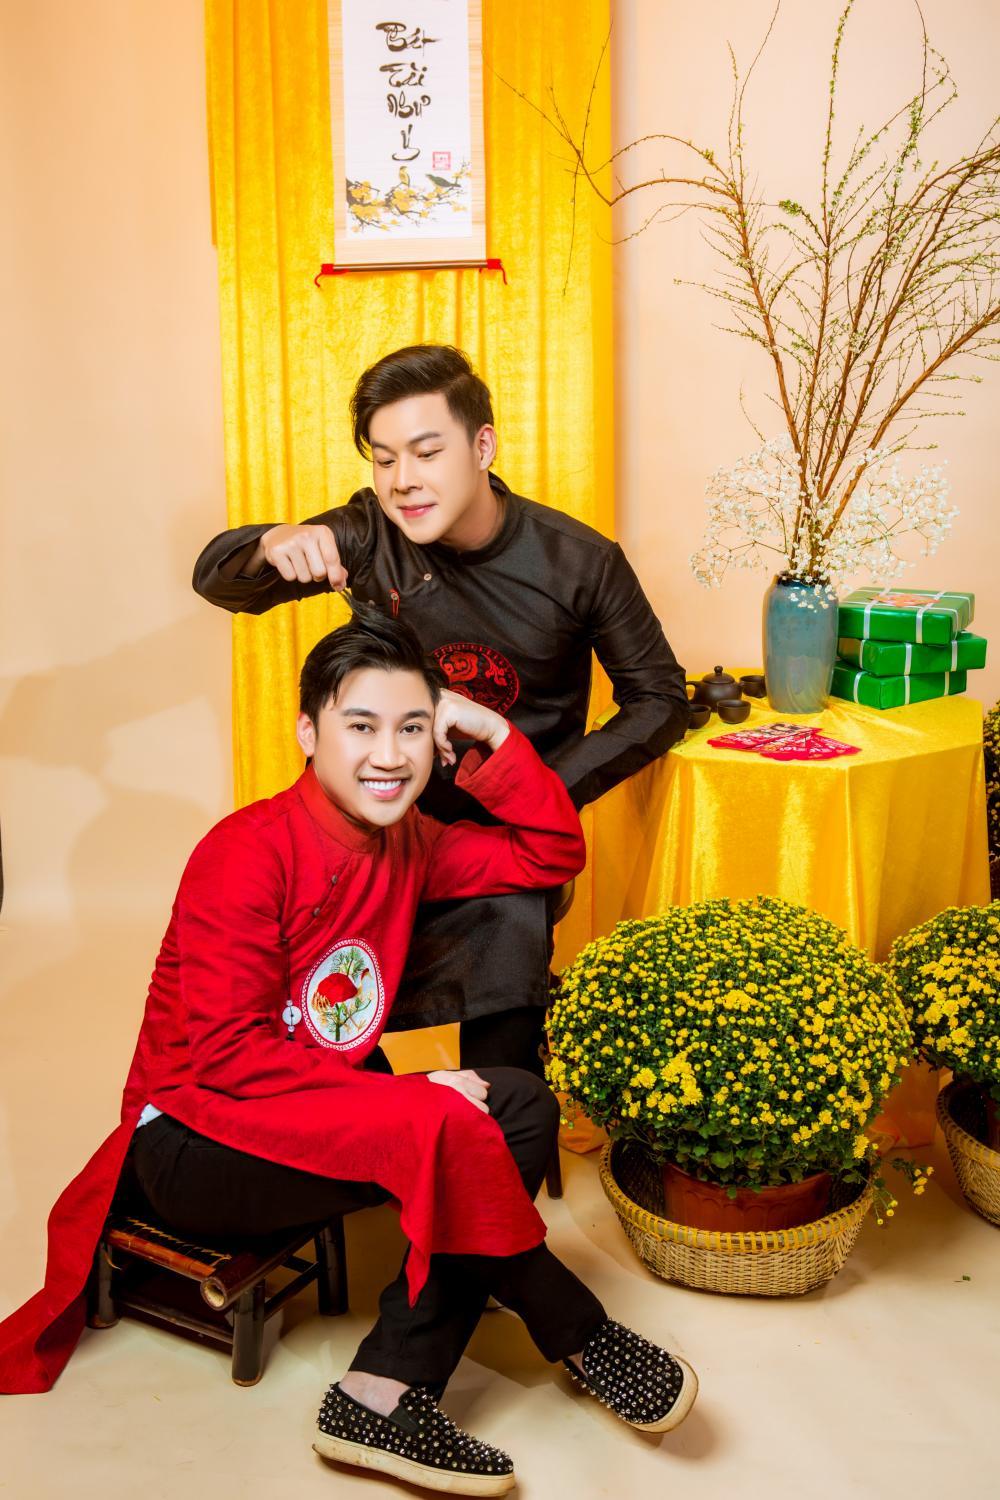  
Nhân dịp Tết và Valentine trùng nhau, Don Nguyễn - Thanh Tú thực hiện bộ ảnh đôi khiến khán giả phải ghen tị. 